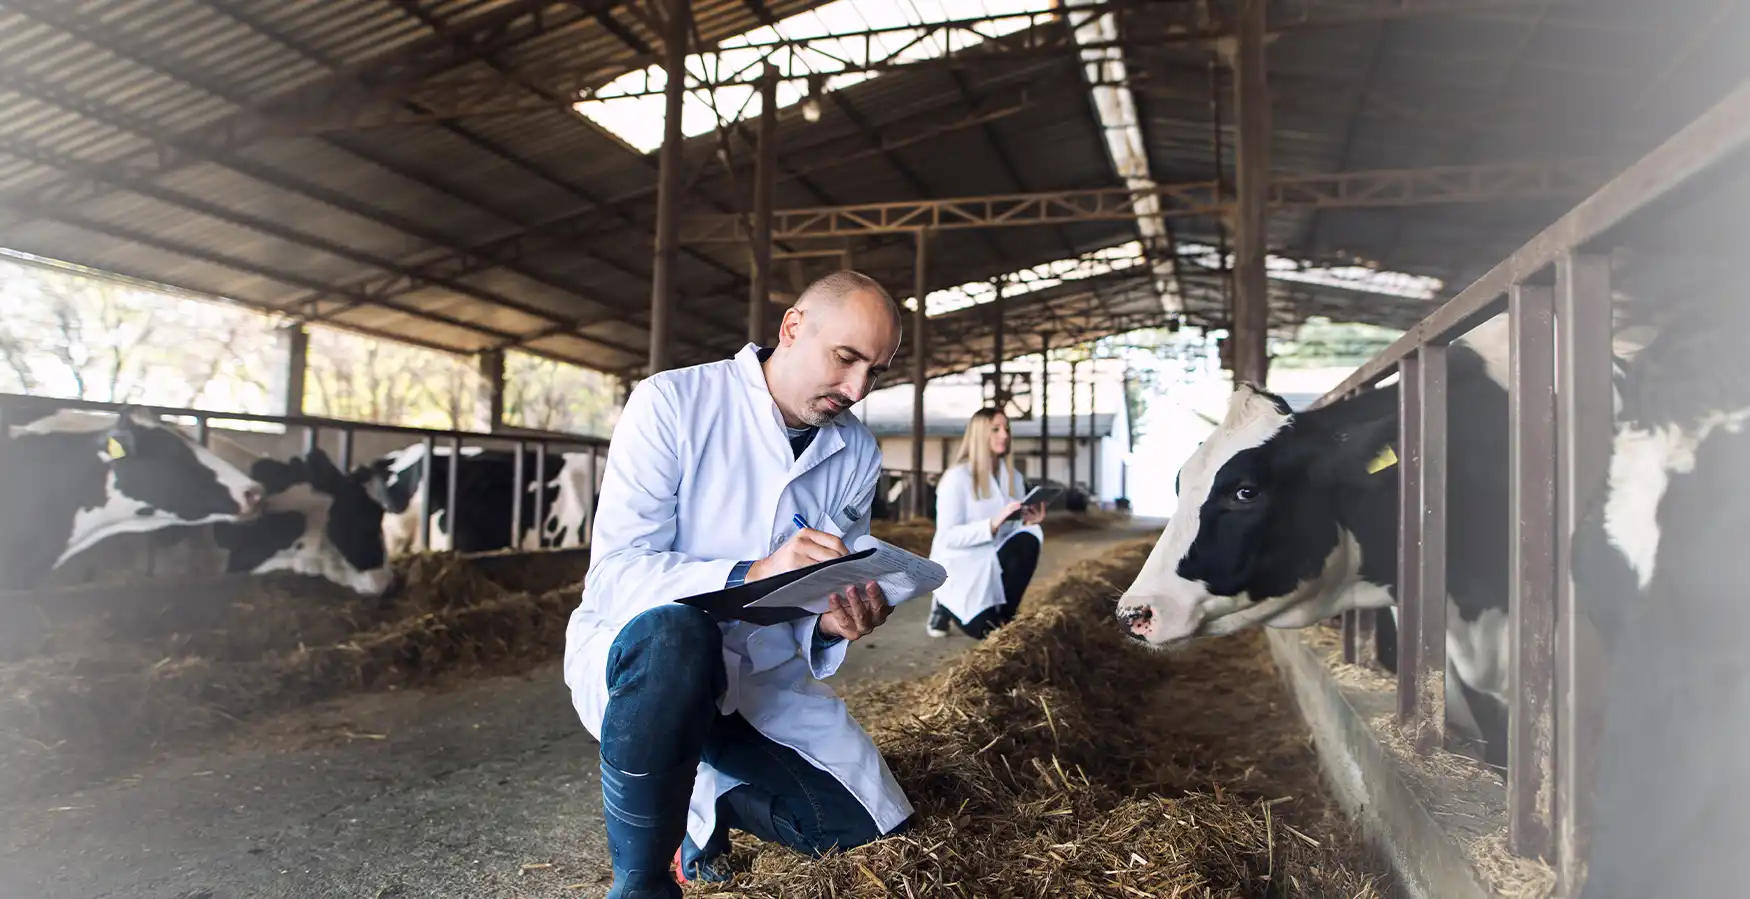 Homem a tratar e a registar dados sobre o estado de saúde de uma vaca, no âmbito do Curso de Auxiliar de Clínica Veterinária - Espécies Pecuárias e Equinos.